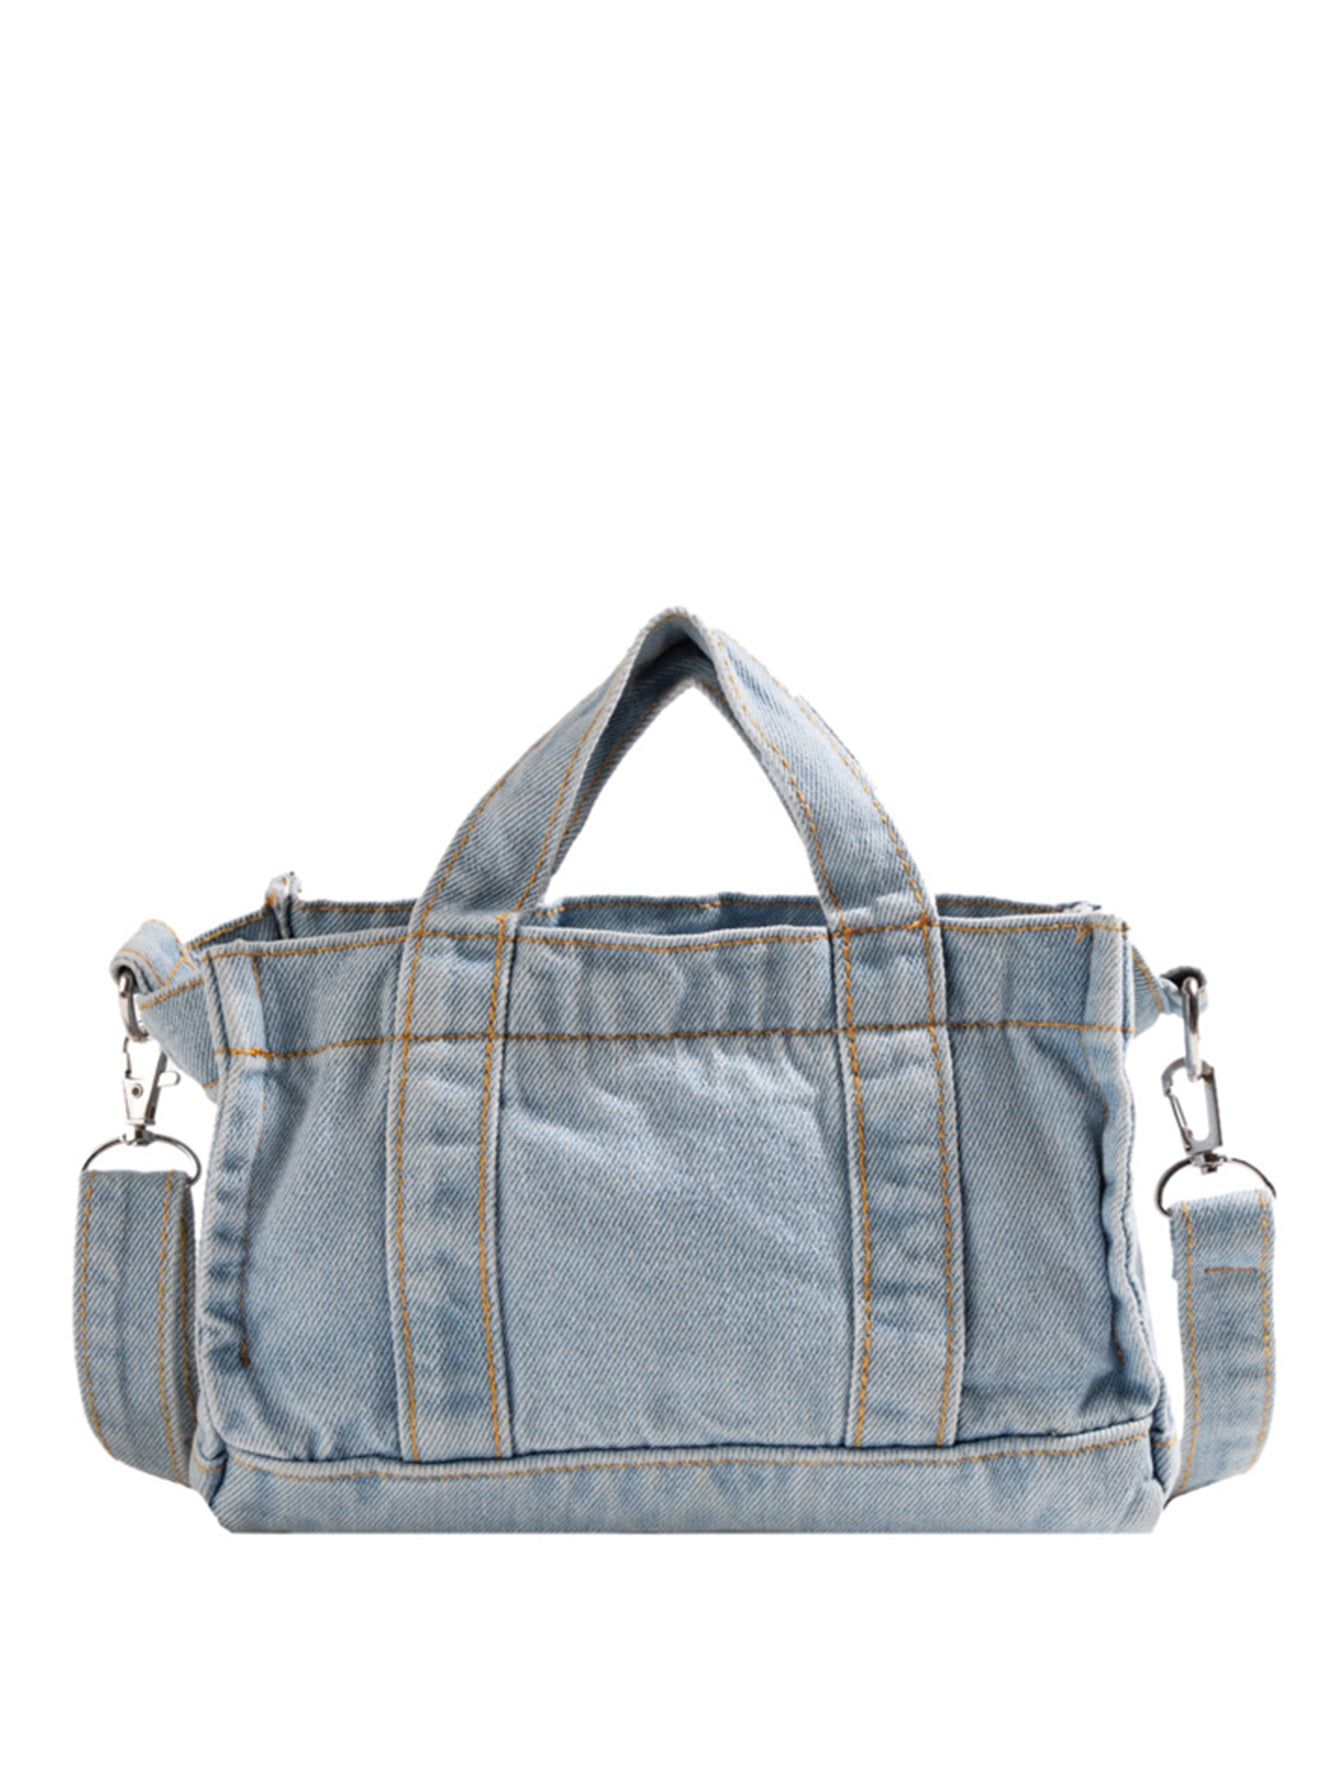 denim shoulder handbag, light blue, front angle, white background